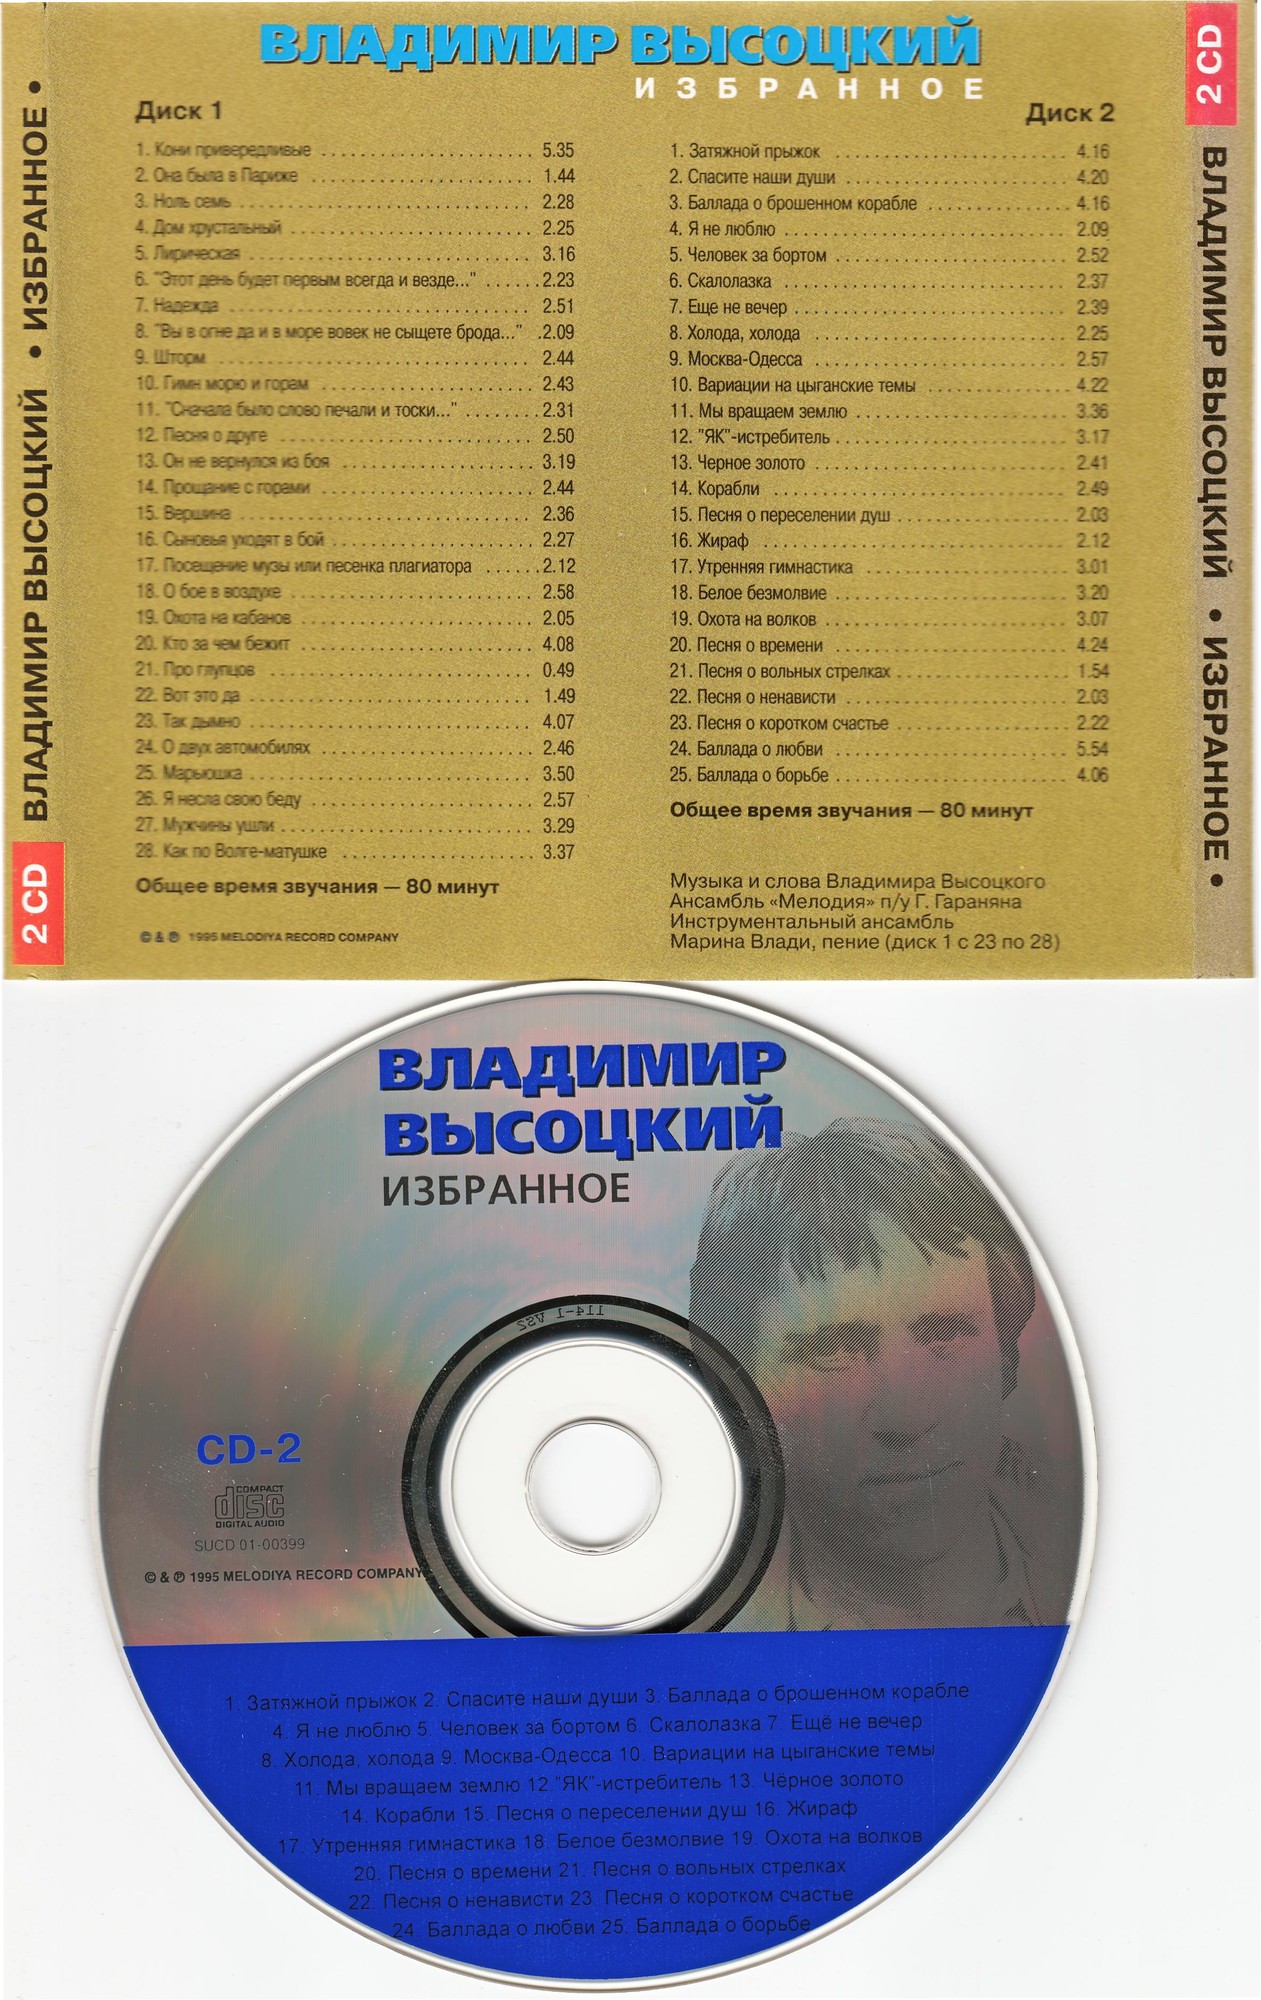 Владимир Высоцкий. Избранное - 2 CD